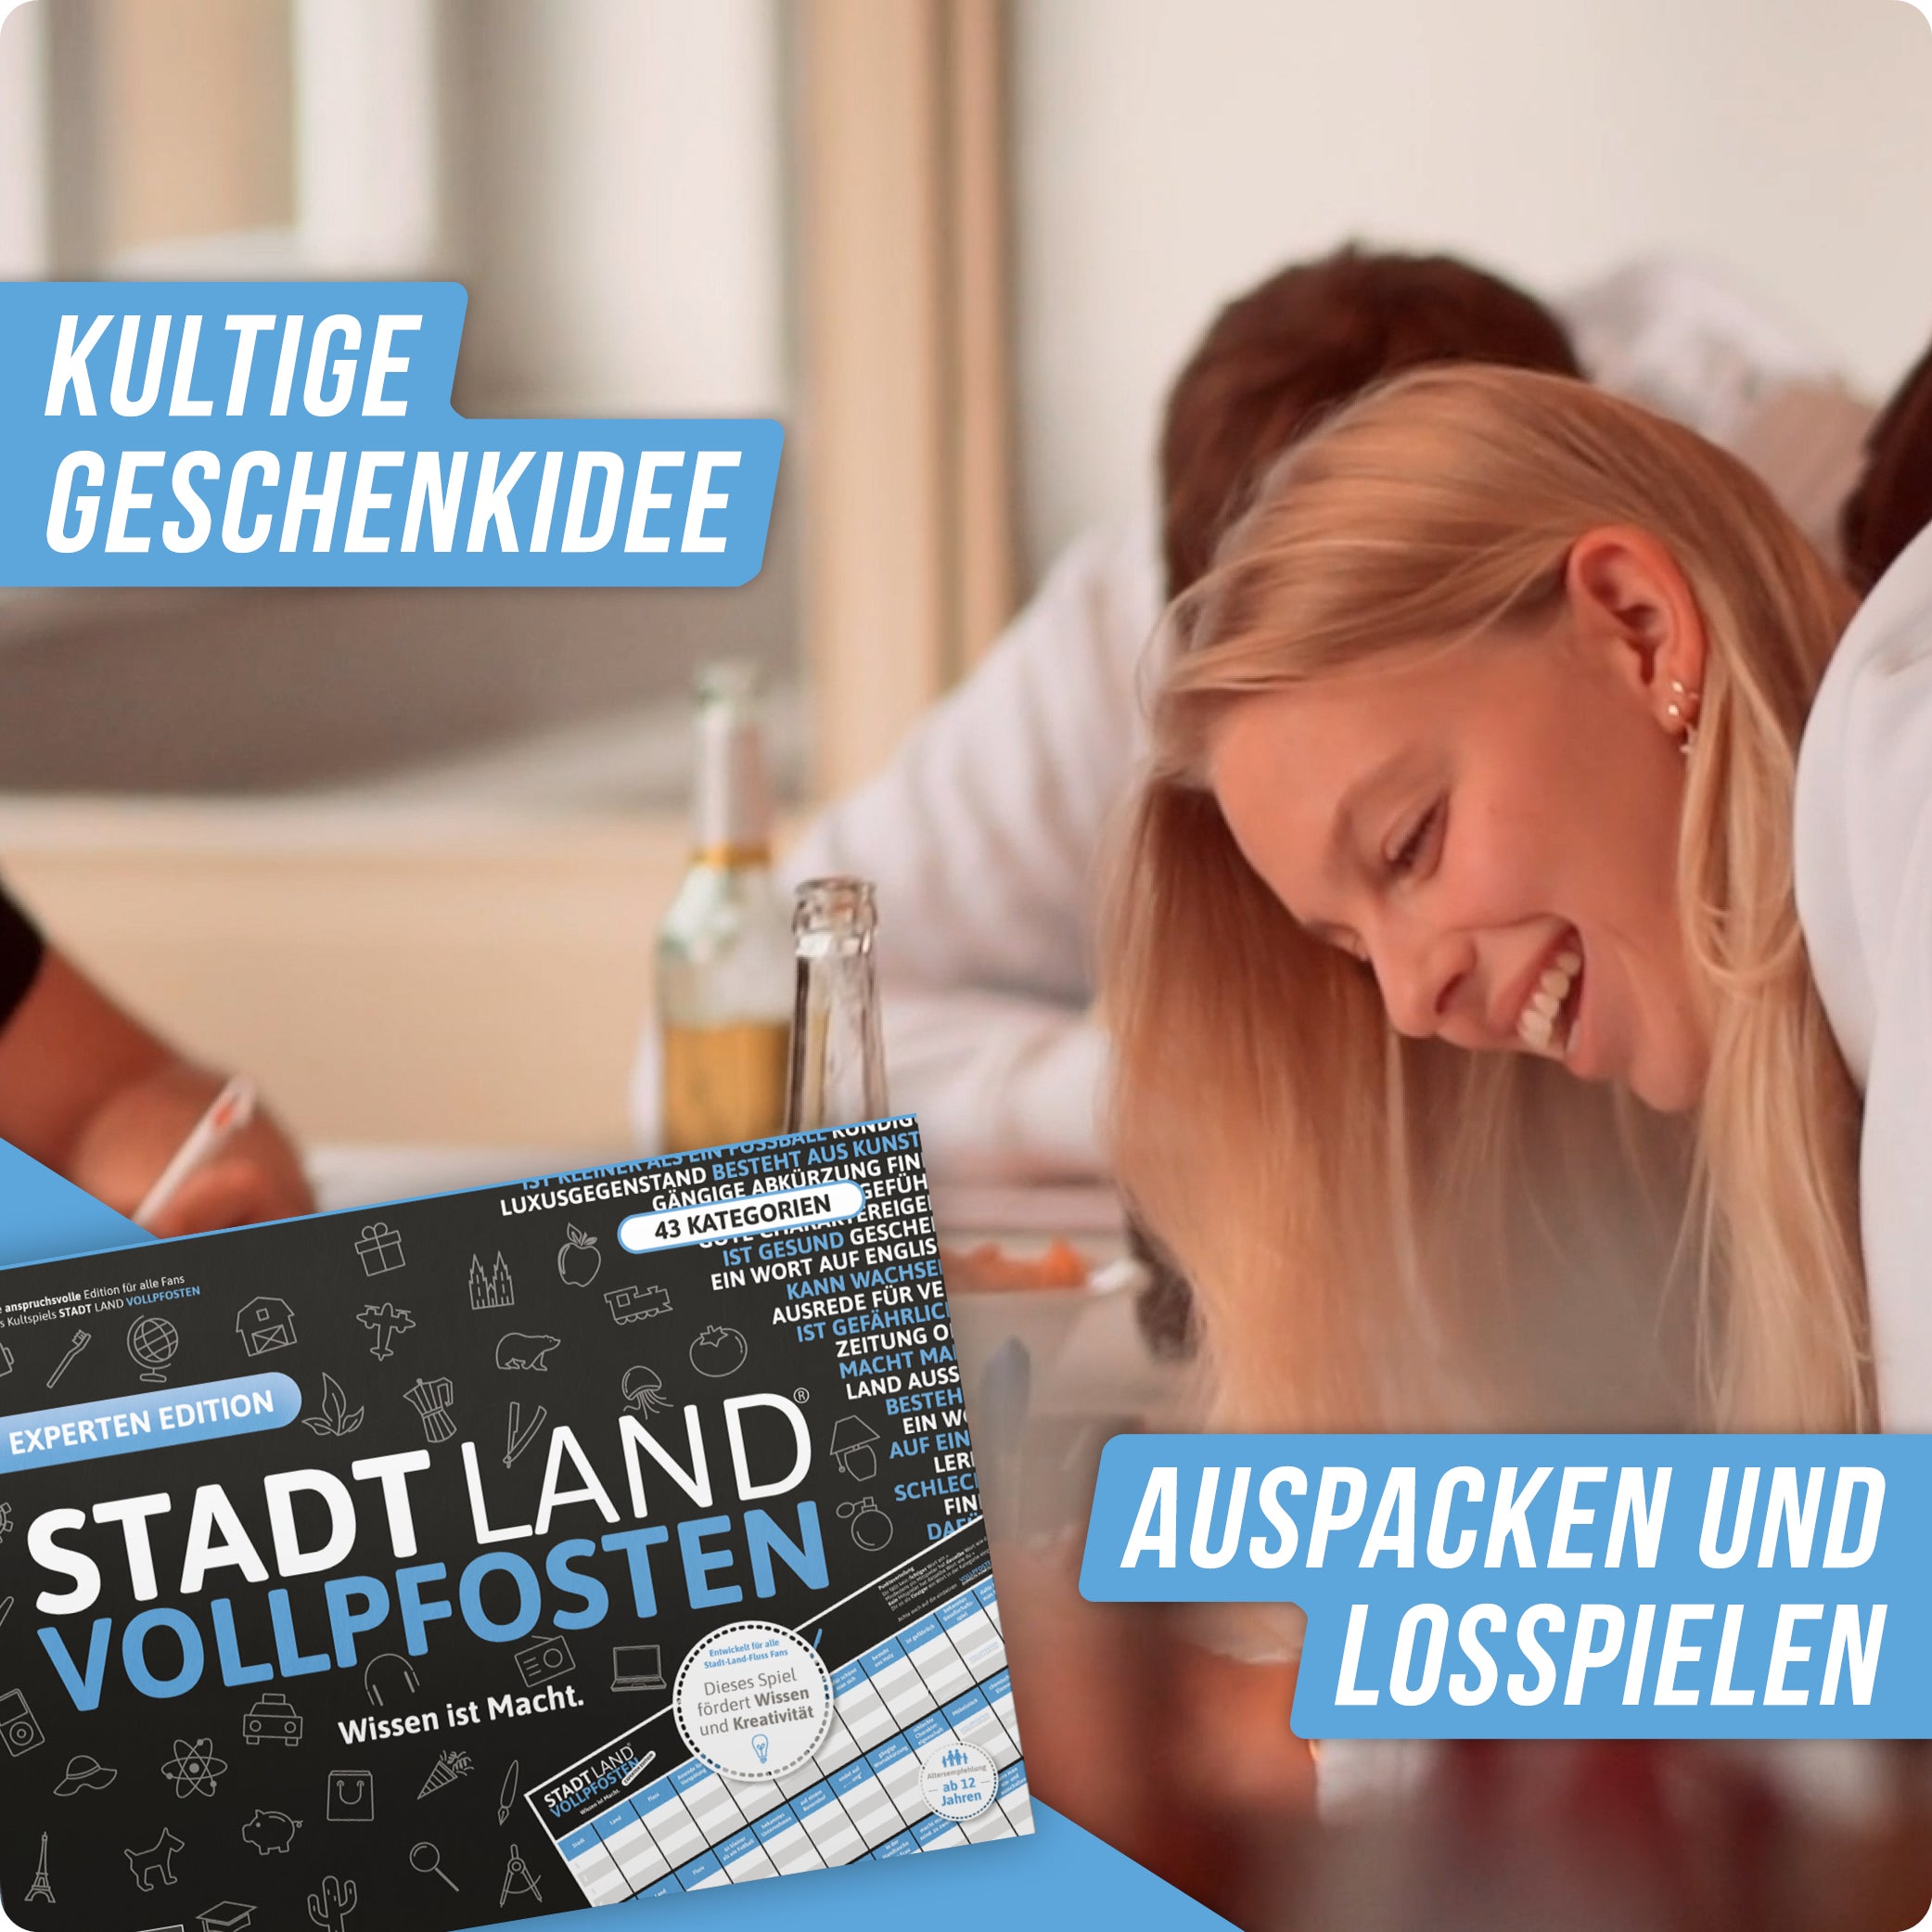 Stadt Land Vollpfosten® Experten Edition – "Wissen ist Macht." | A3 Spielblock